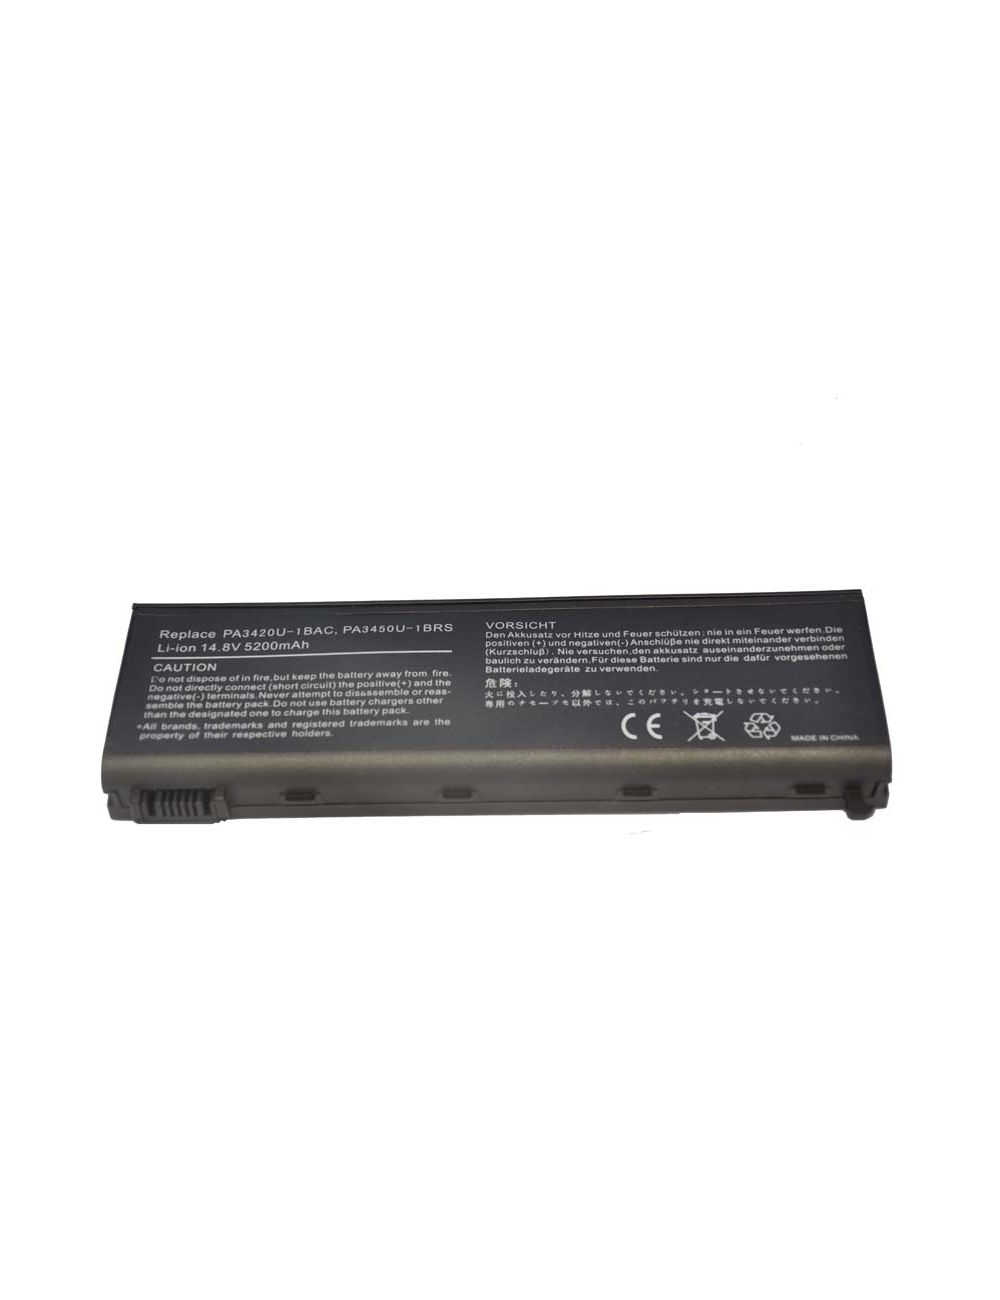 Batería Toshiba PA3420U-1BRS compatible 14,4V 4400mAh Li-Ion - TO-PA3420U-6 -  -  - 1